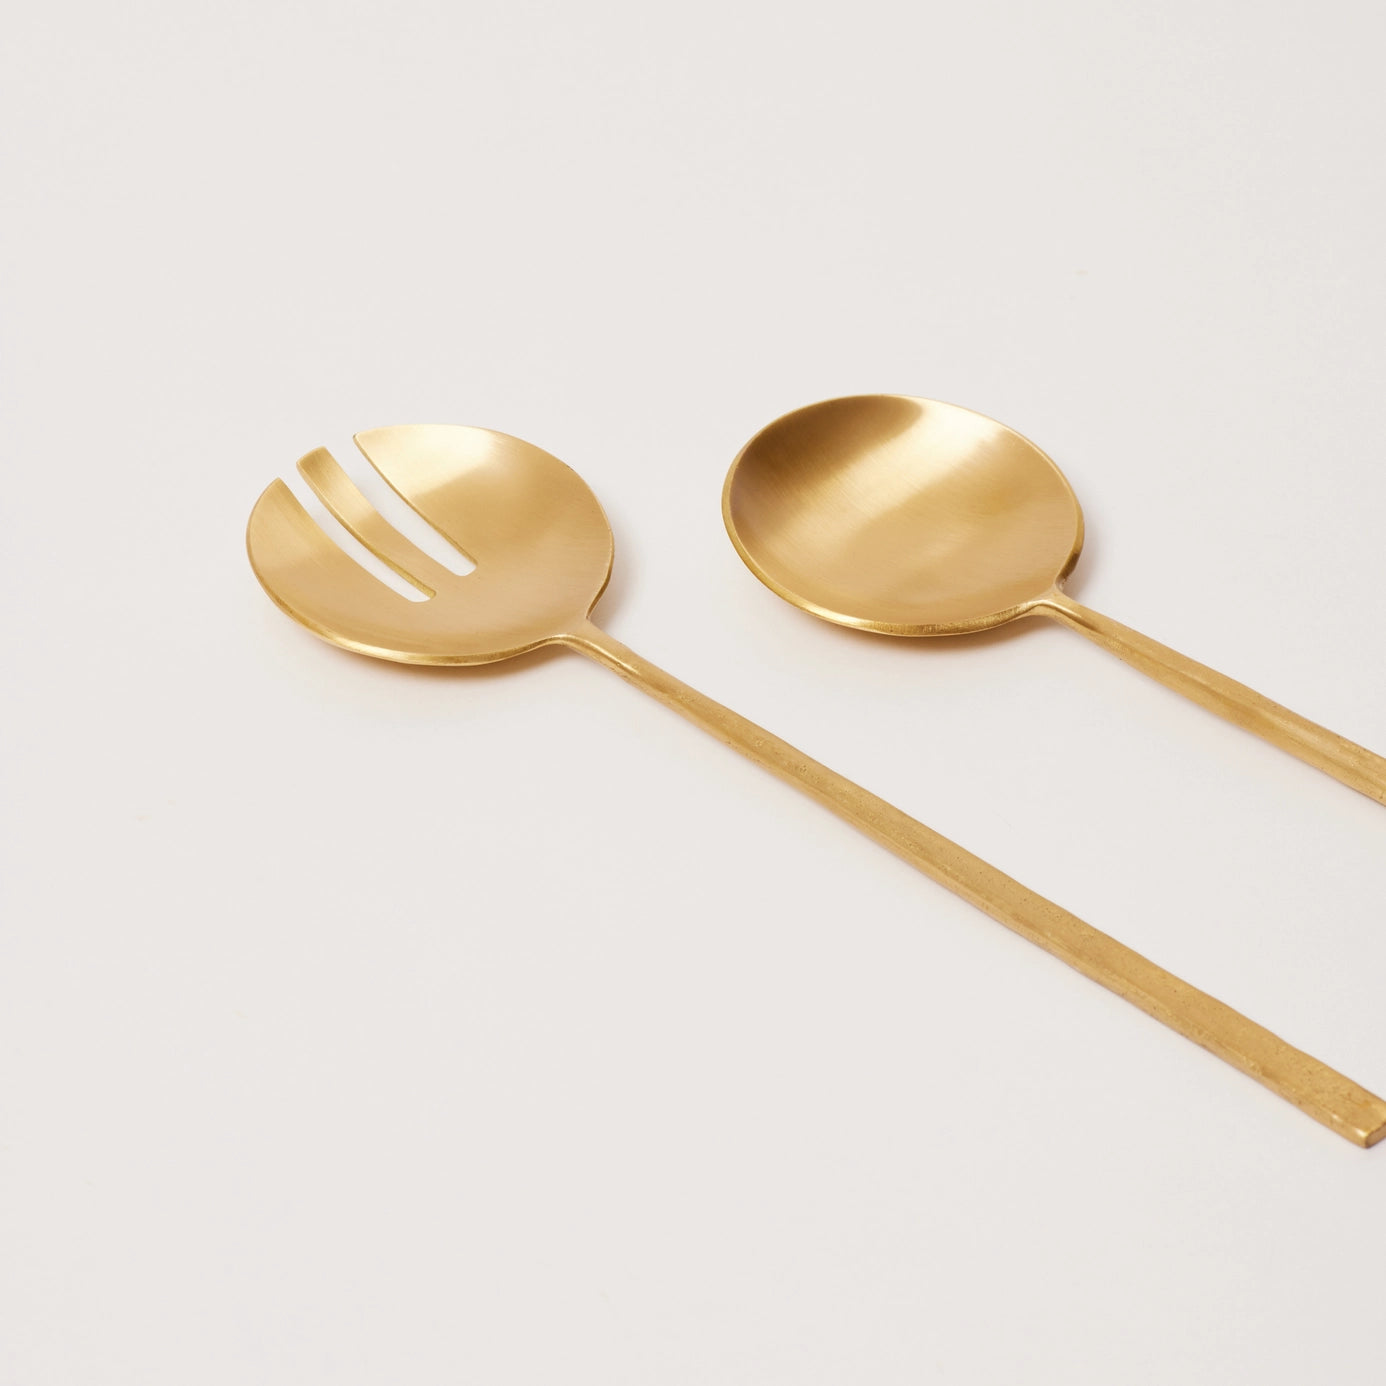 Modern brass serving utensils